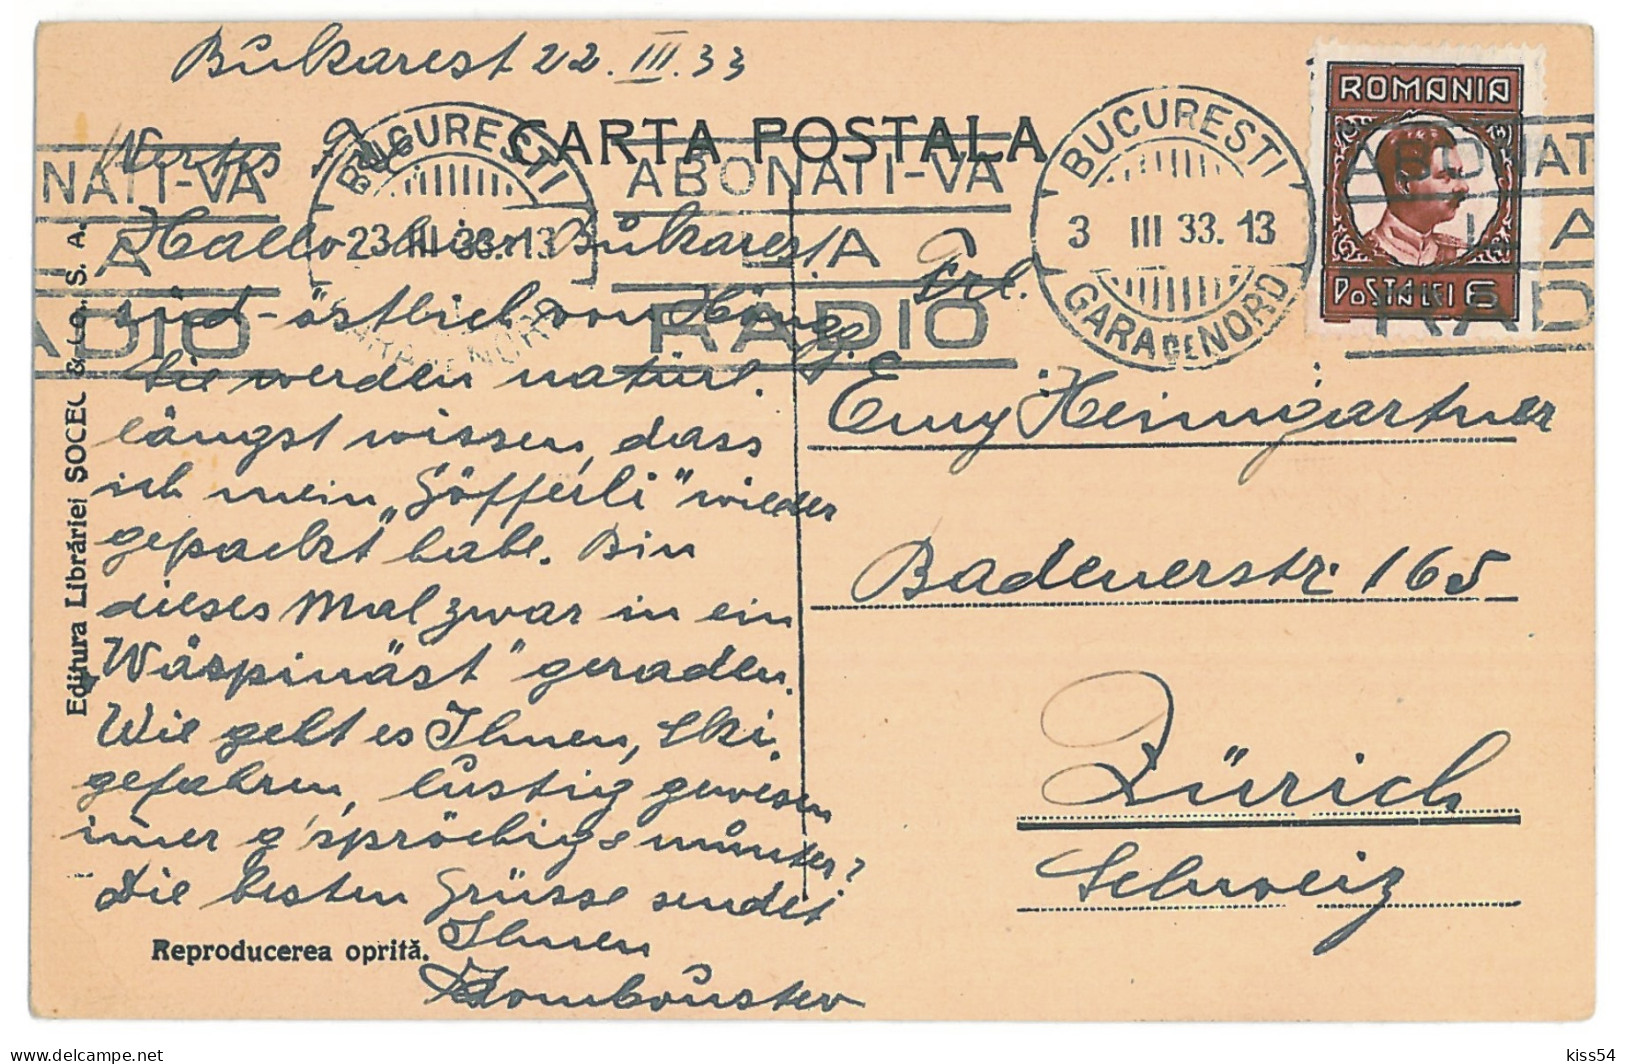 RO 79 - 12429 BUCURESTI, University, Tramway, Romania - Old Postcard - Used - 1933 - Rumänien